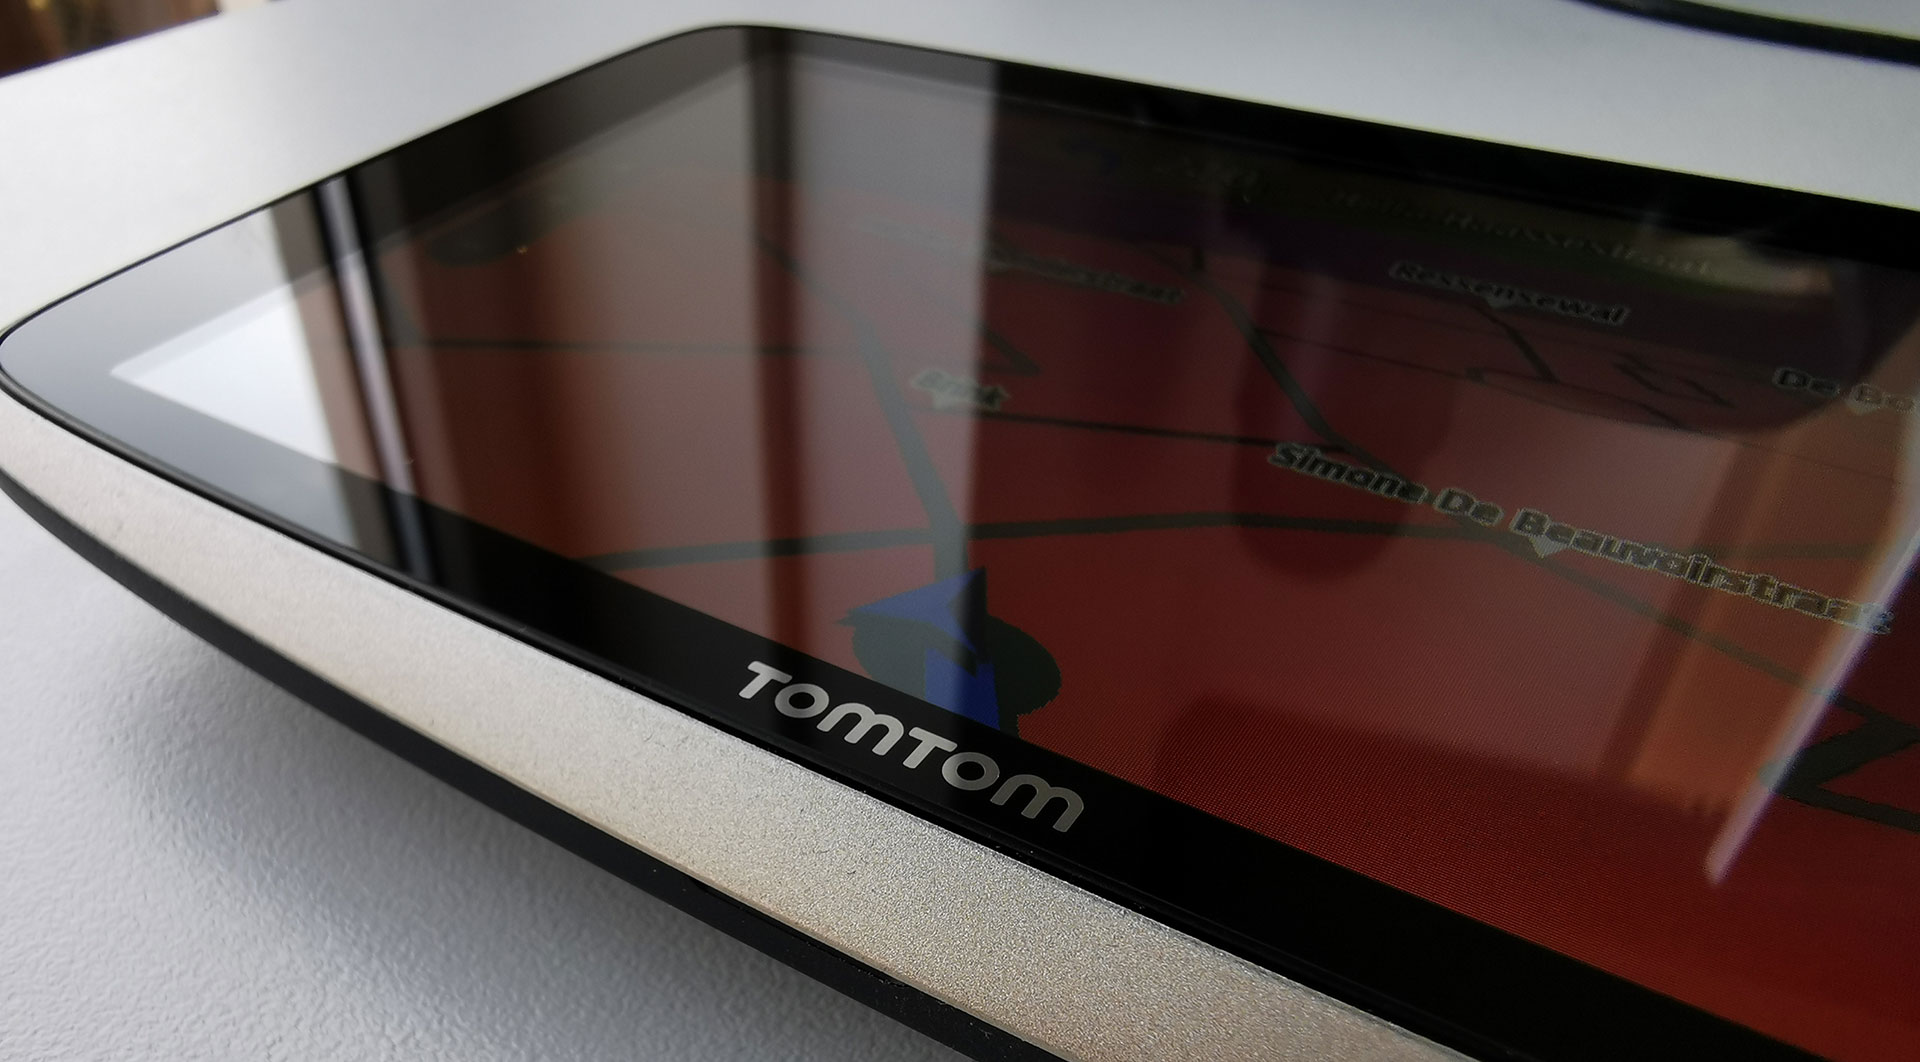 recept Schep Tonen Review: TomTom Go Premium X nog steeds de beste navigatie ervaring -  GadgetGear.nl